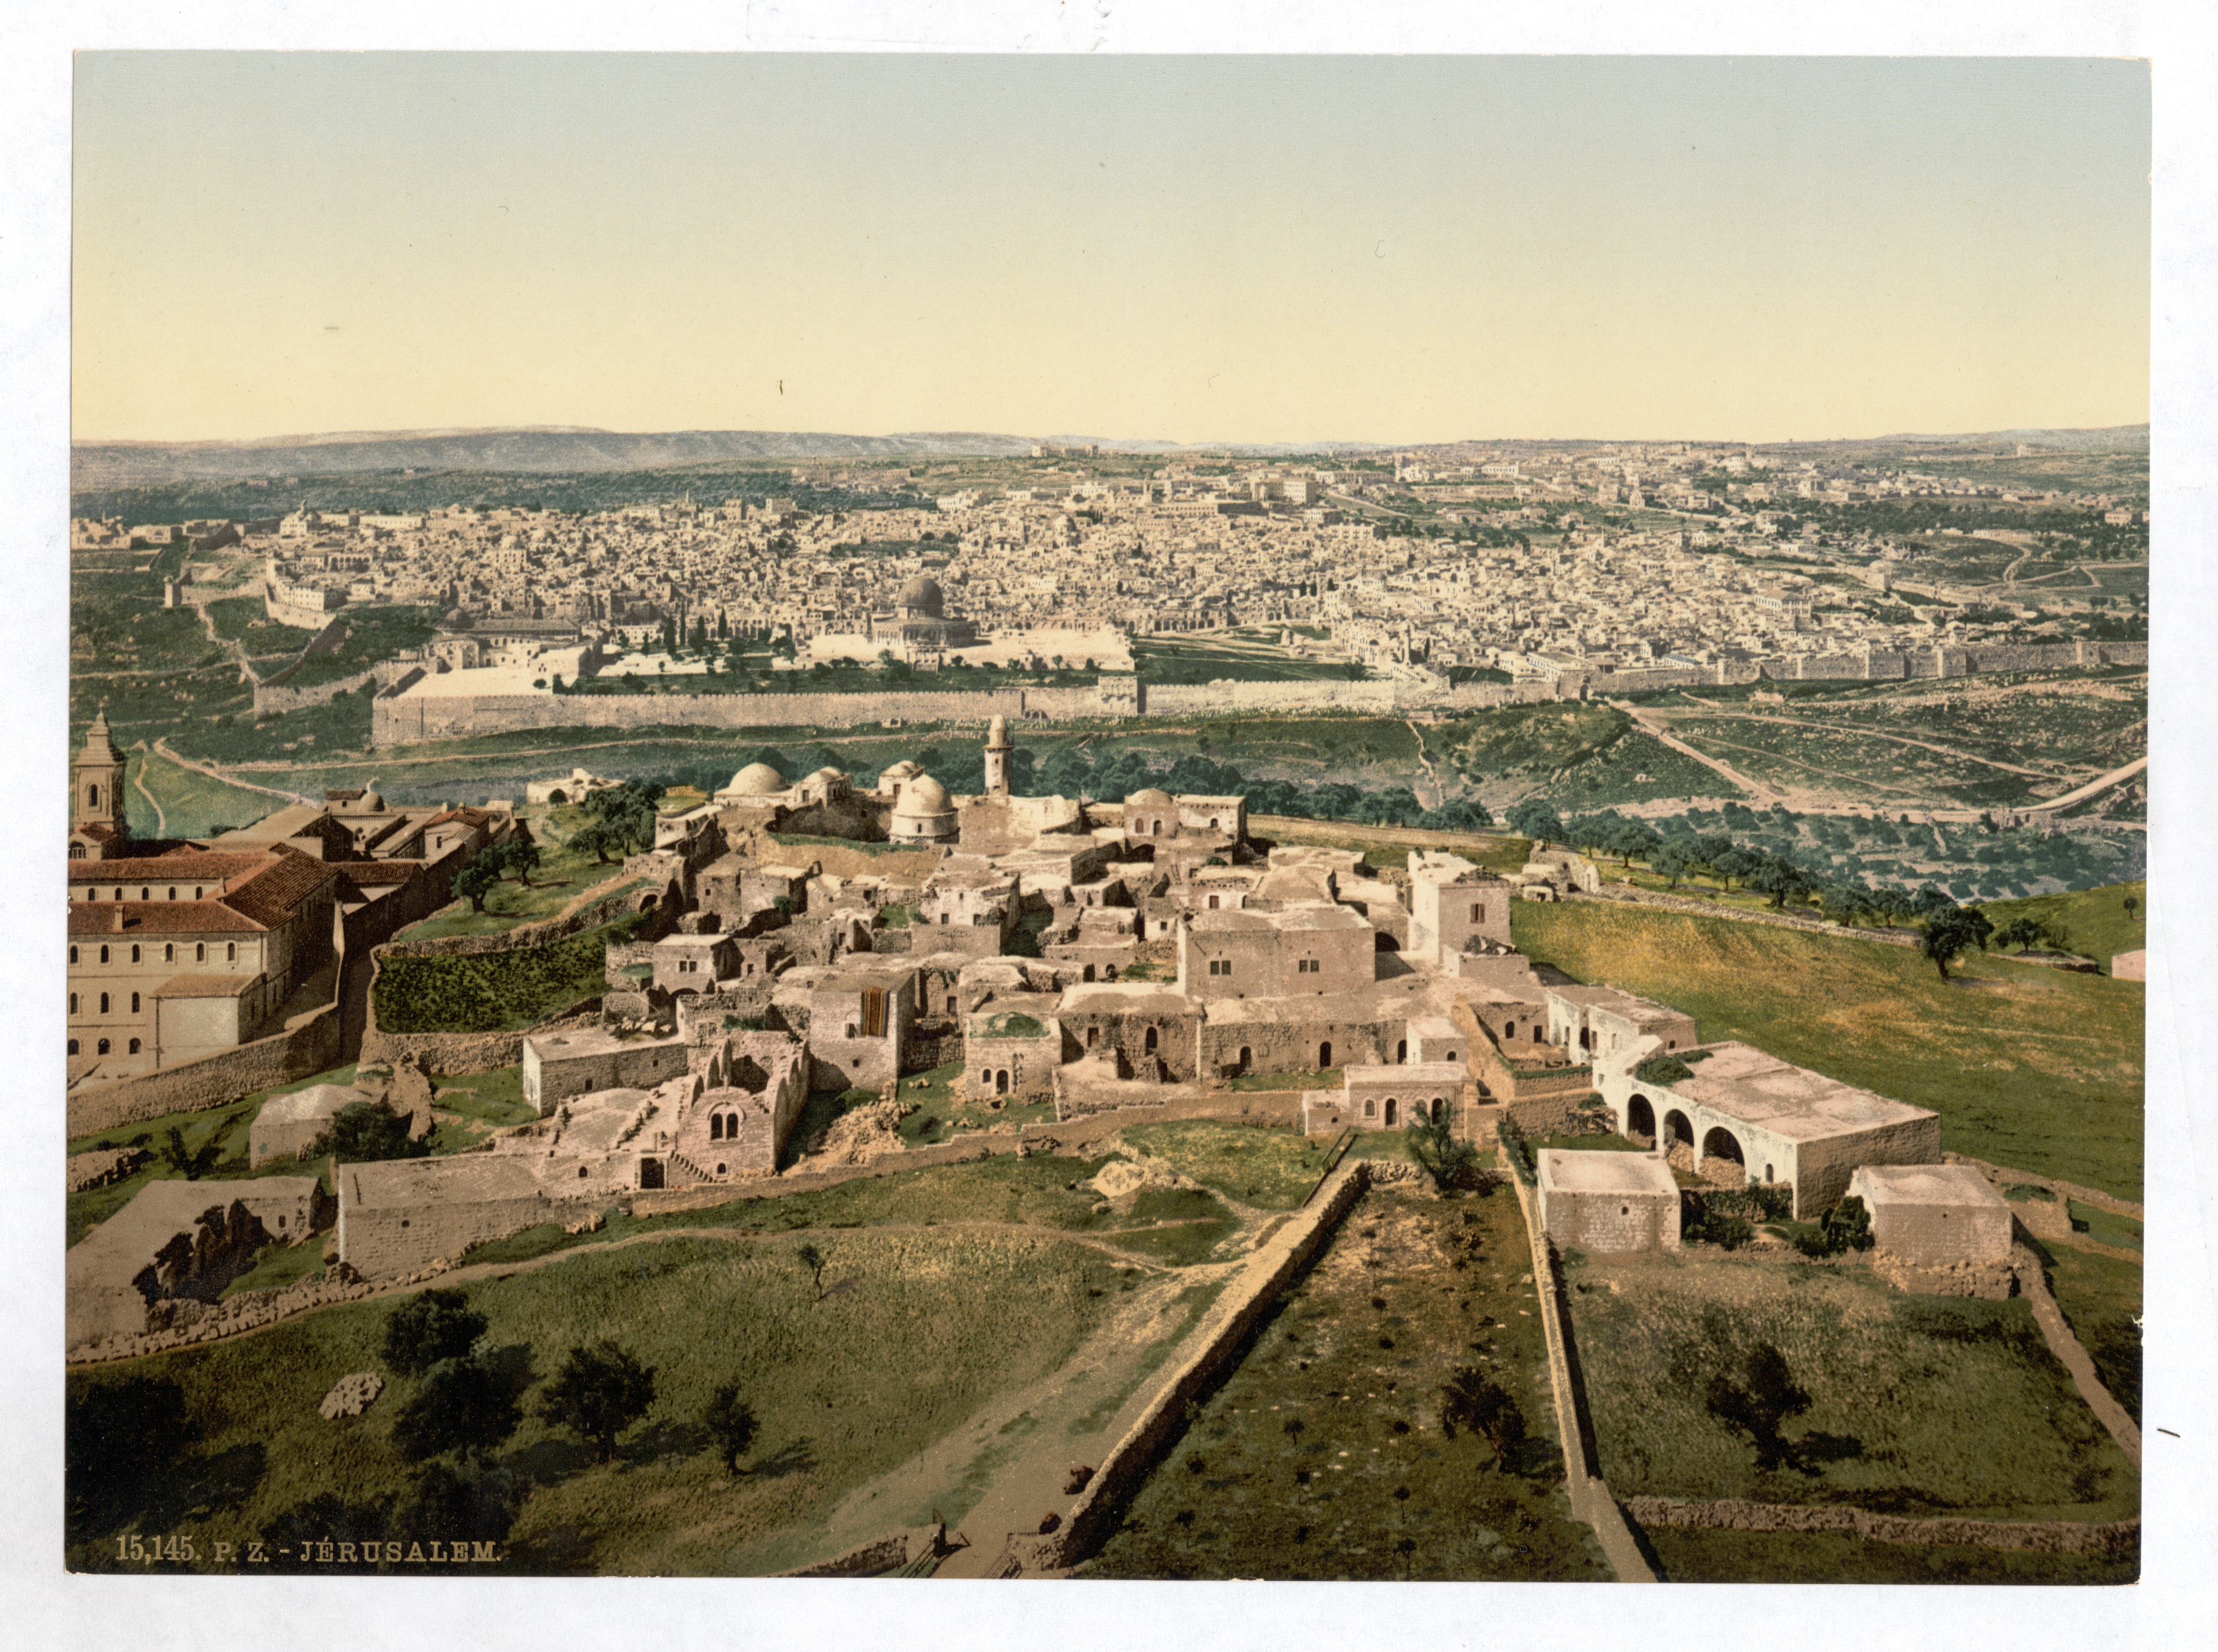 Иерусалим страна в древности. Иерусалим 1 века. Древняя Палестина Иерусалим. Иерусалим древний город.